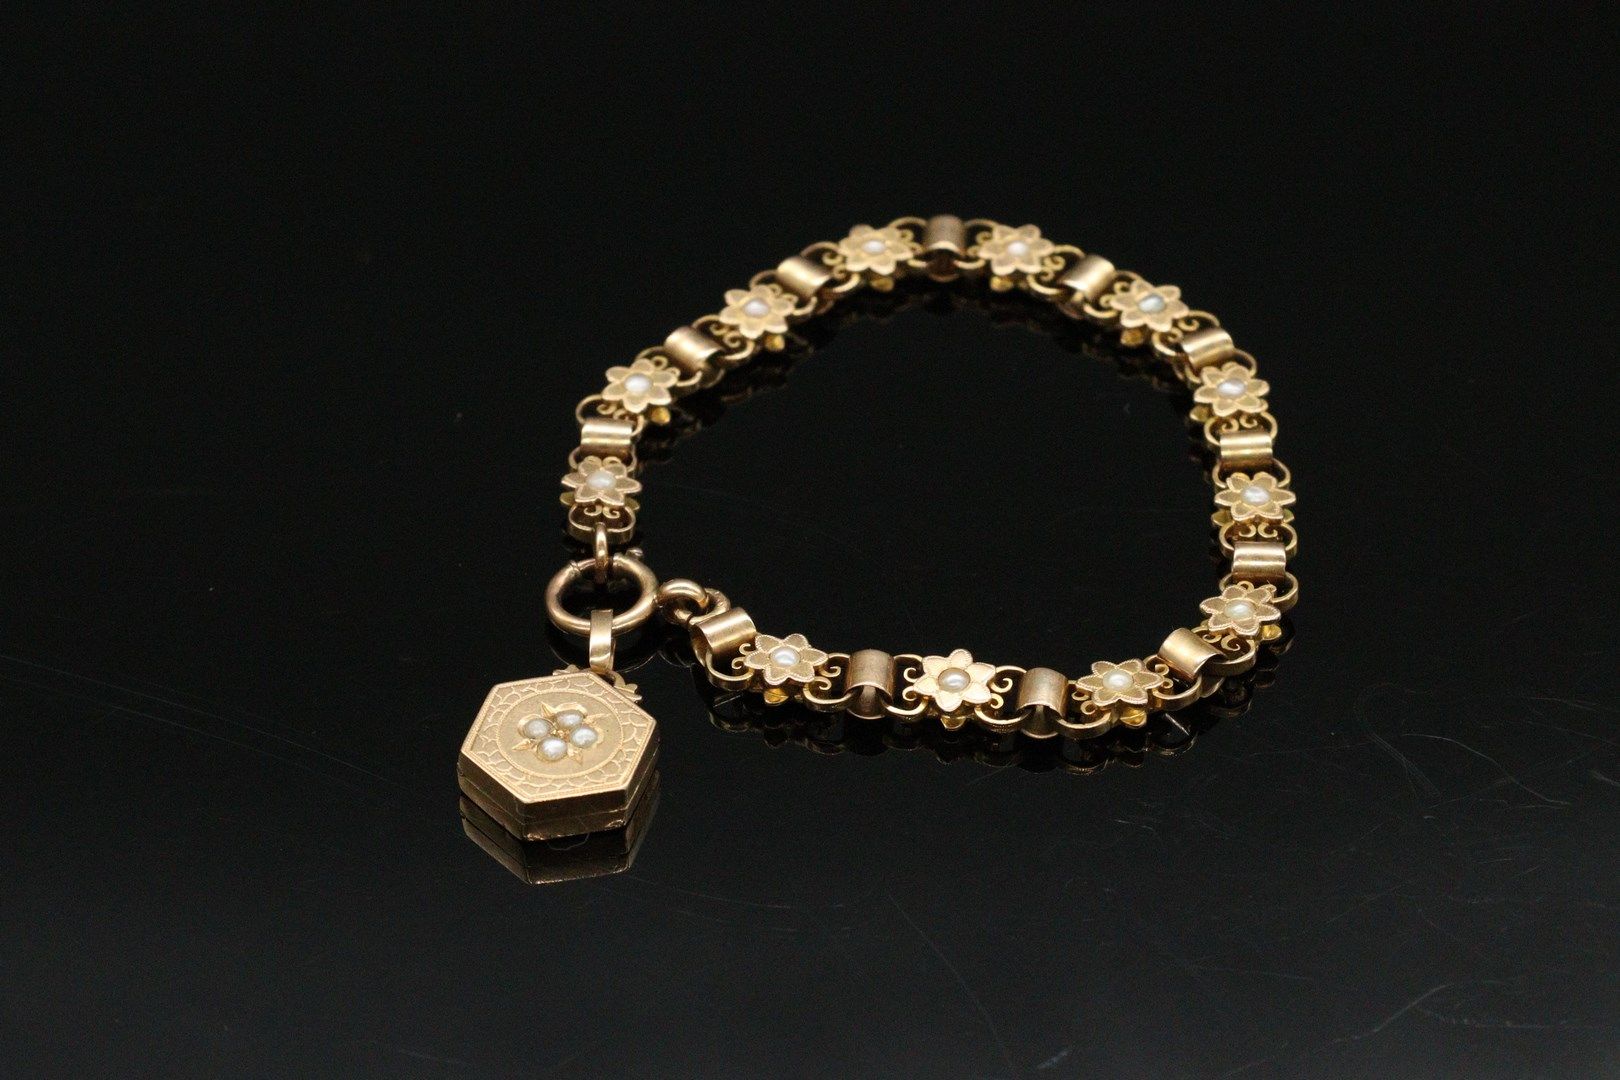 Null 一条18K(750)黄金手链，其扣子上有一个图片奖章。链节由饰有珍珠的玫瑰花组成。 

毛重：17.36克。